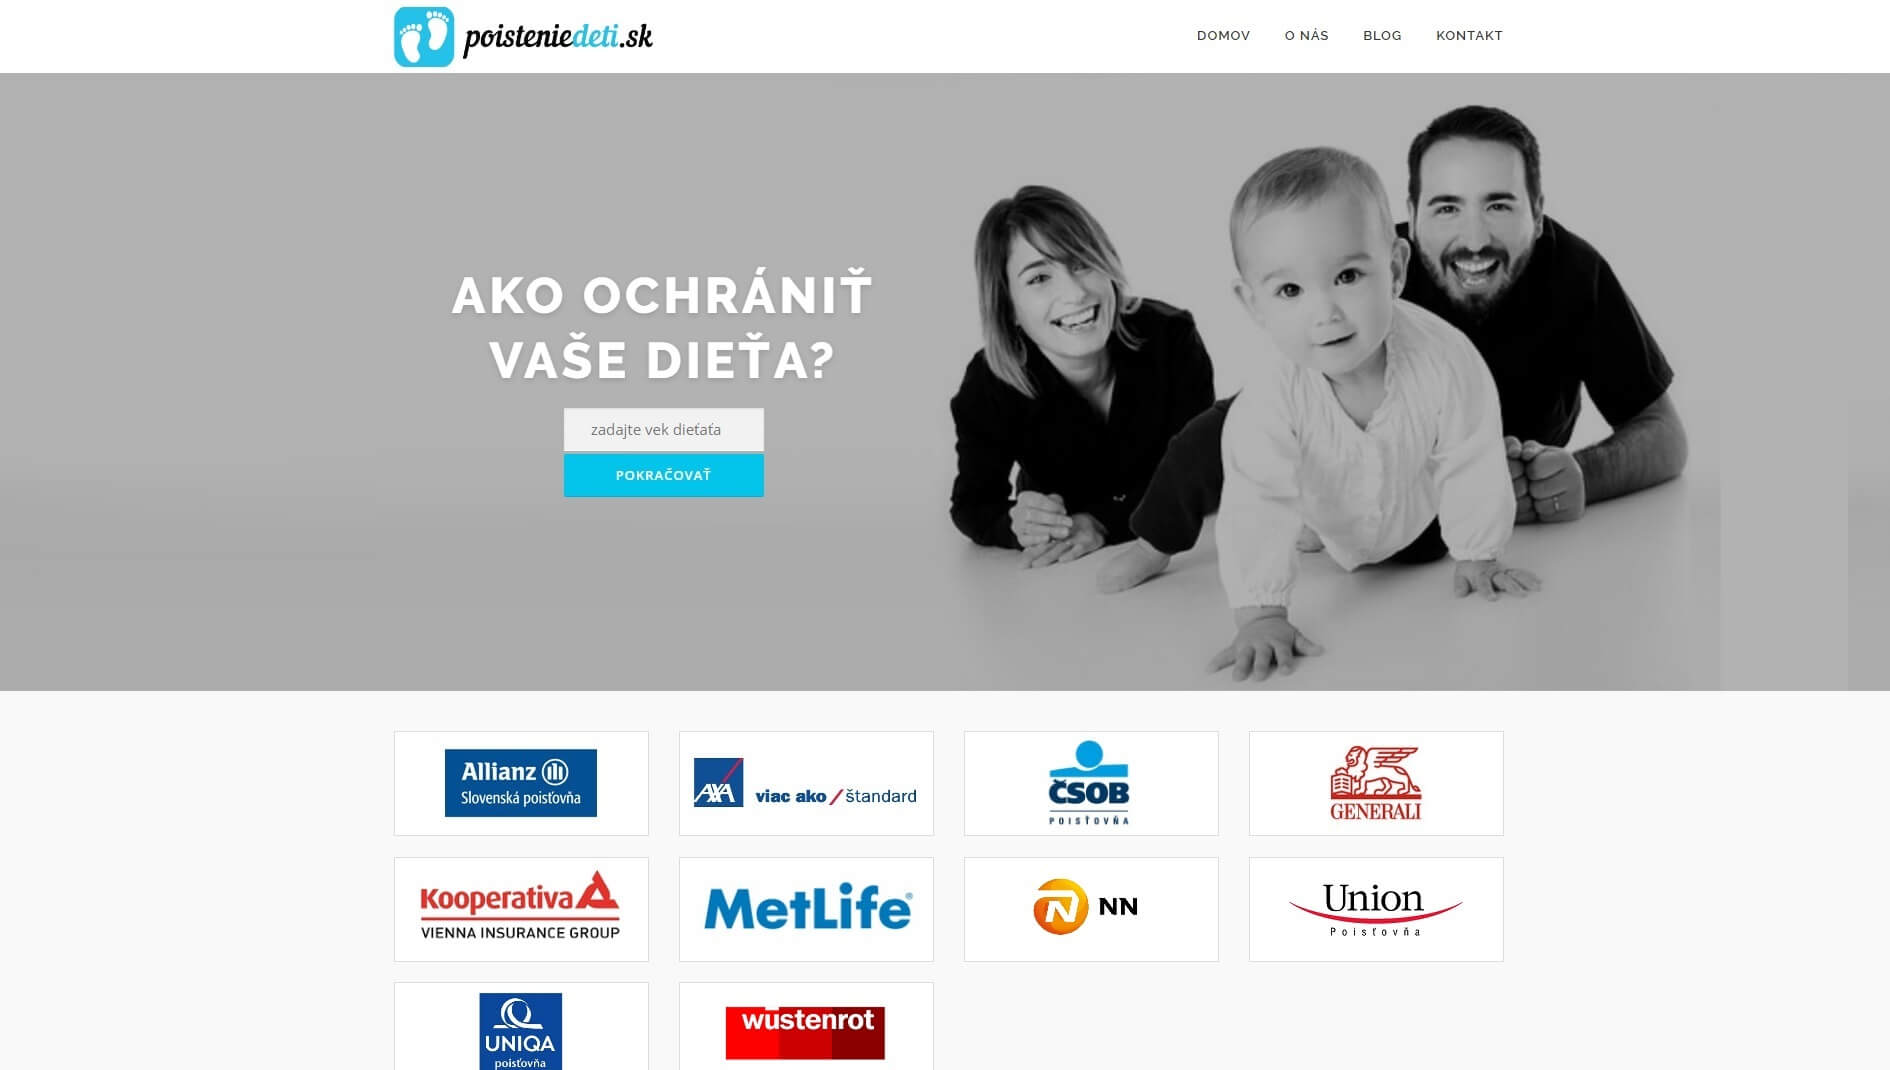 Webstránka http://poisteniedeti.sk/ - verzia pre počítač.